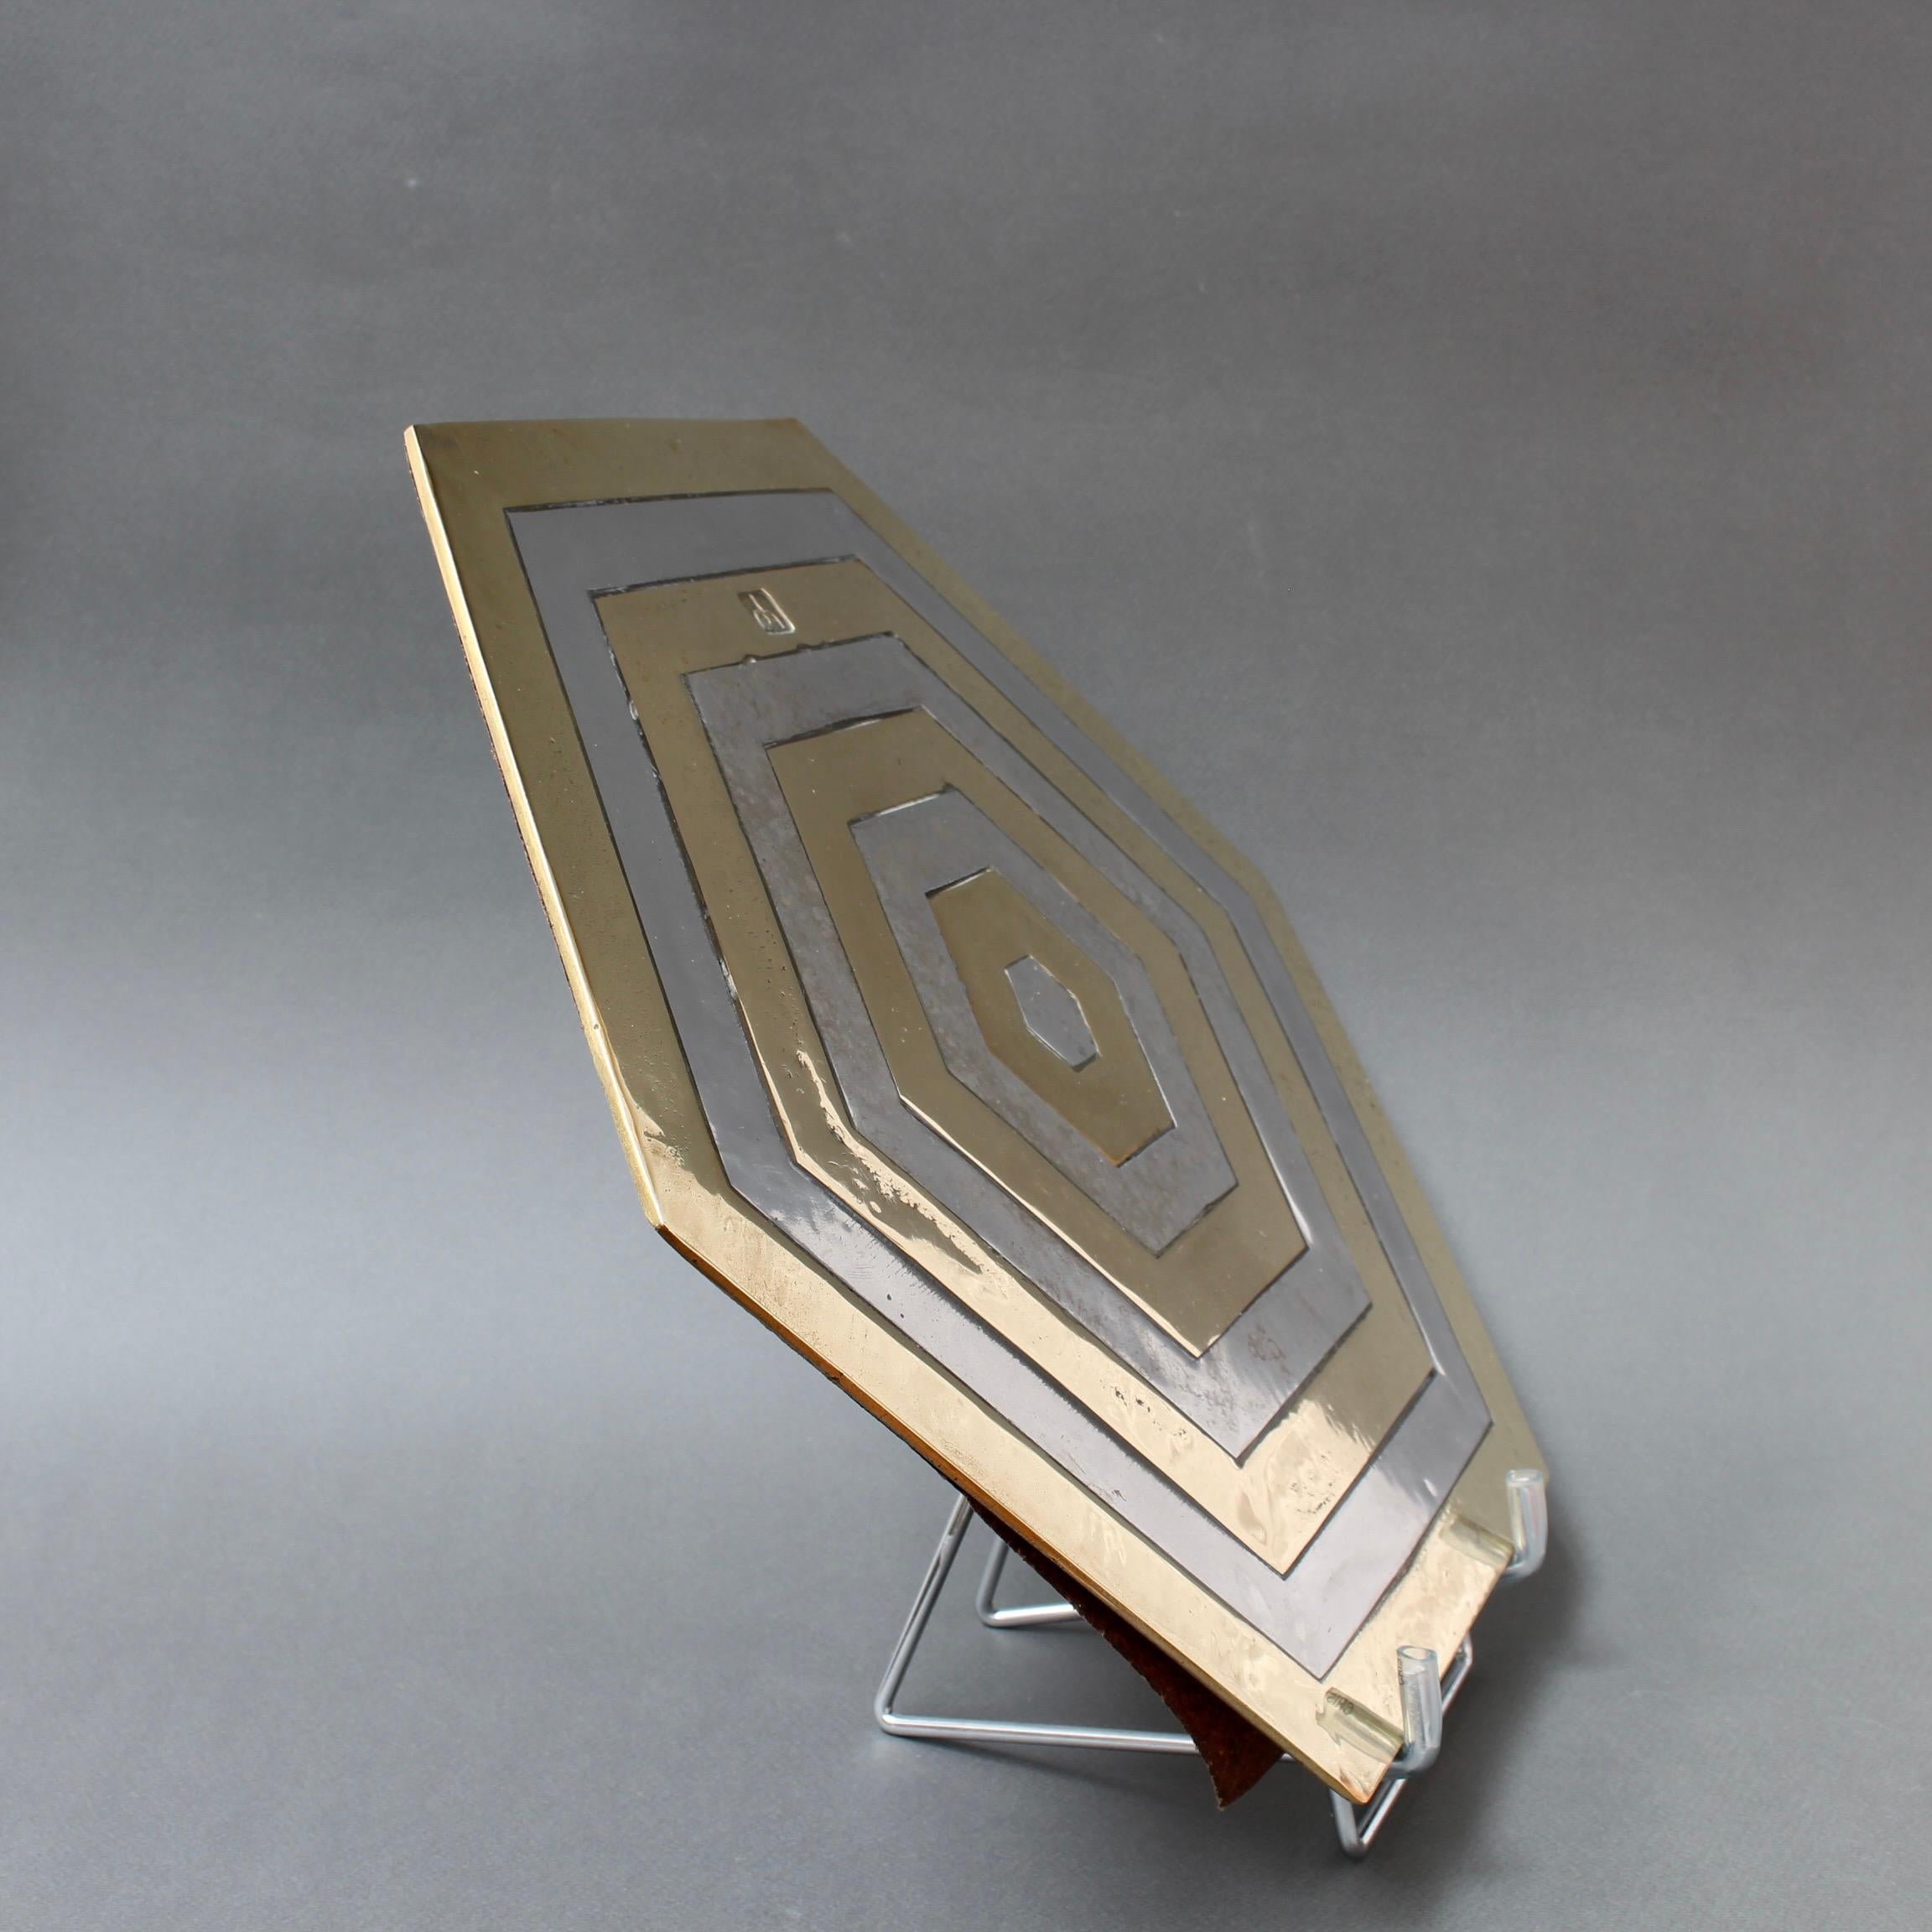 Spanish Aluminium and Brass Hexagonal Decorative Tray by David Marshall 'circa 1980s'